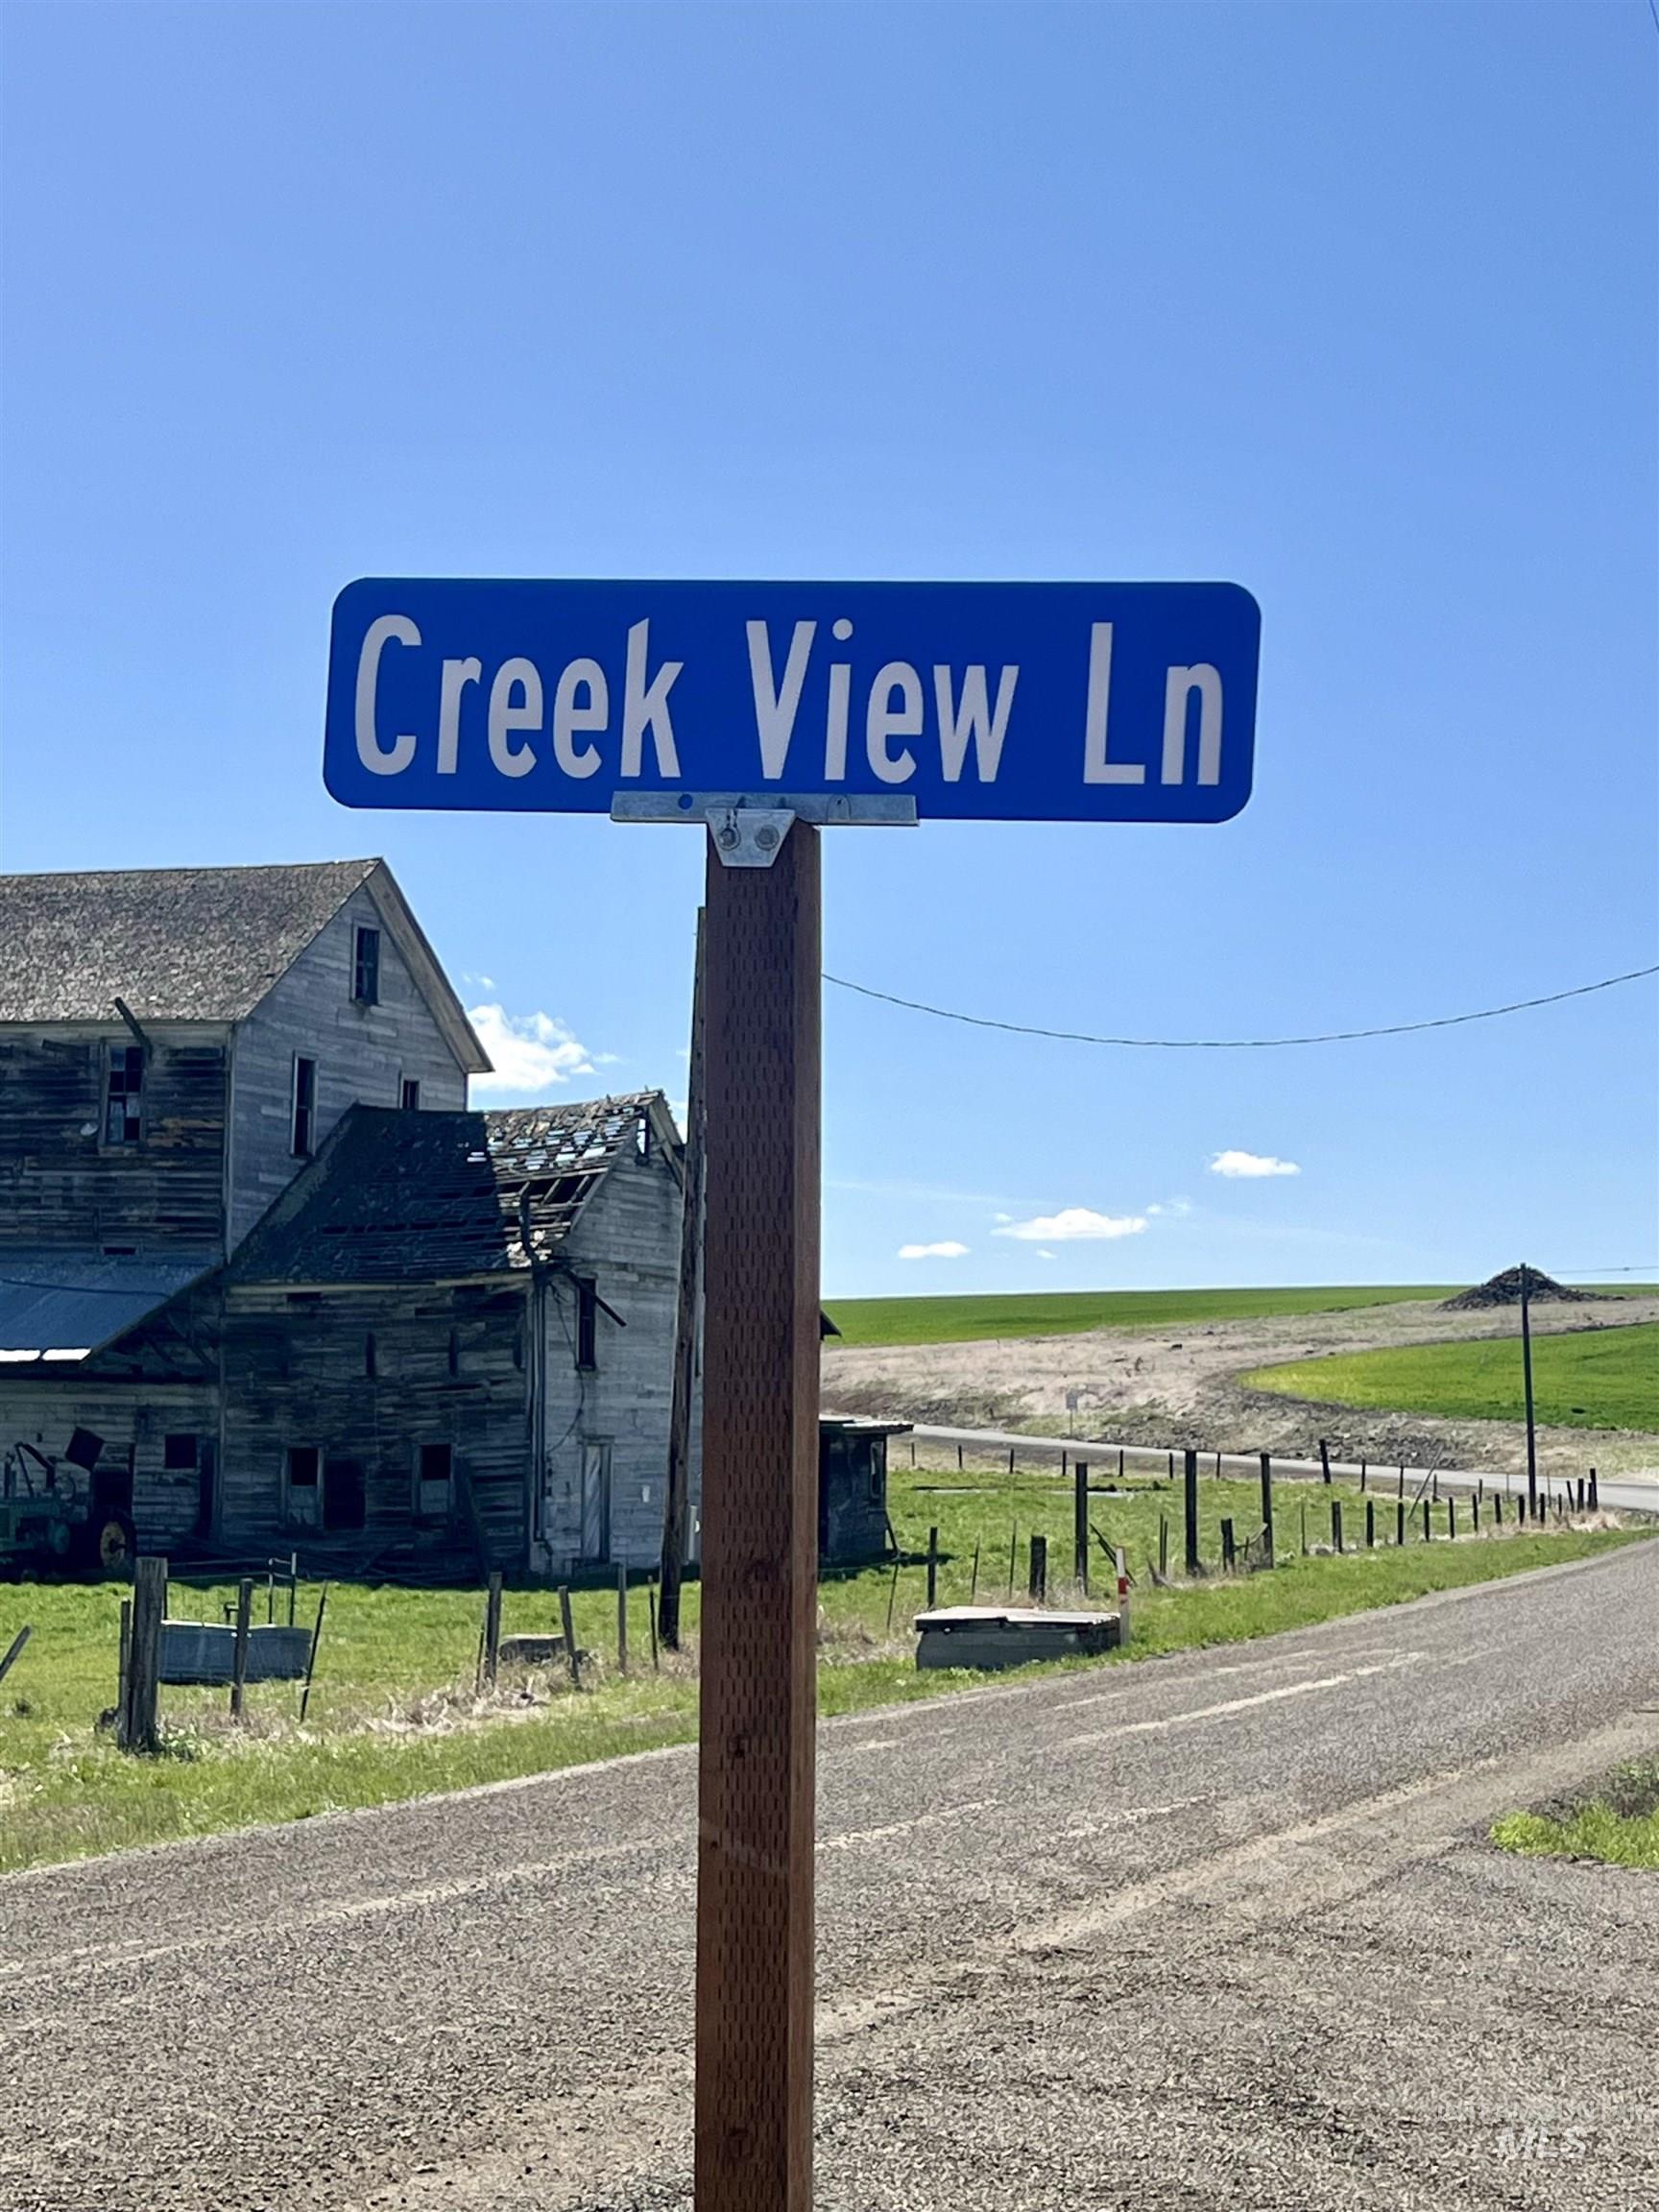 TBD Creek View Lane - Lot 5, Grangeville, Idaho 83530, Land For Sale, Price $199,900,MLS 98907576